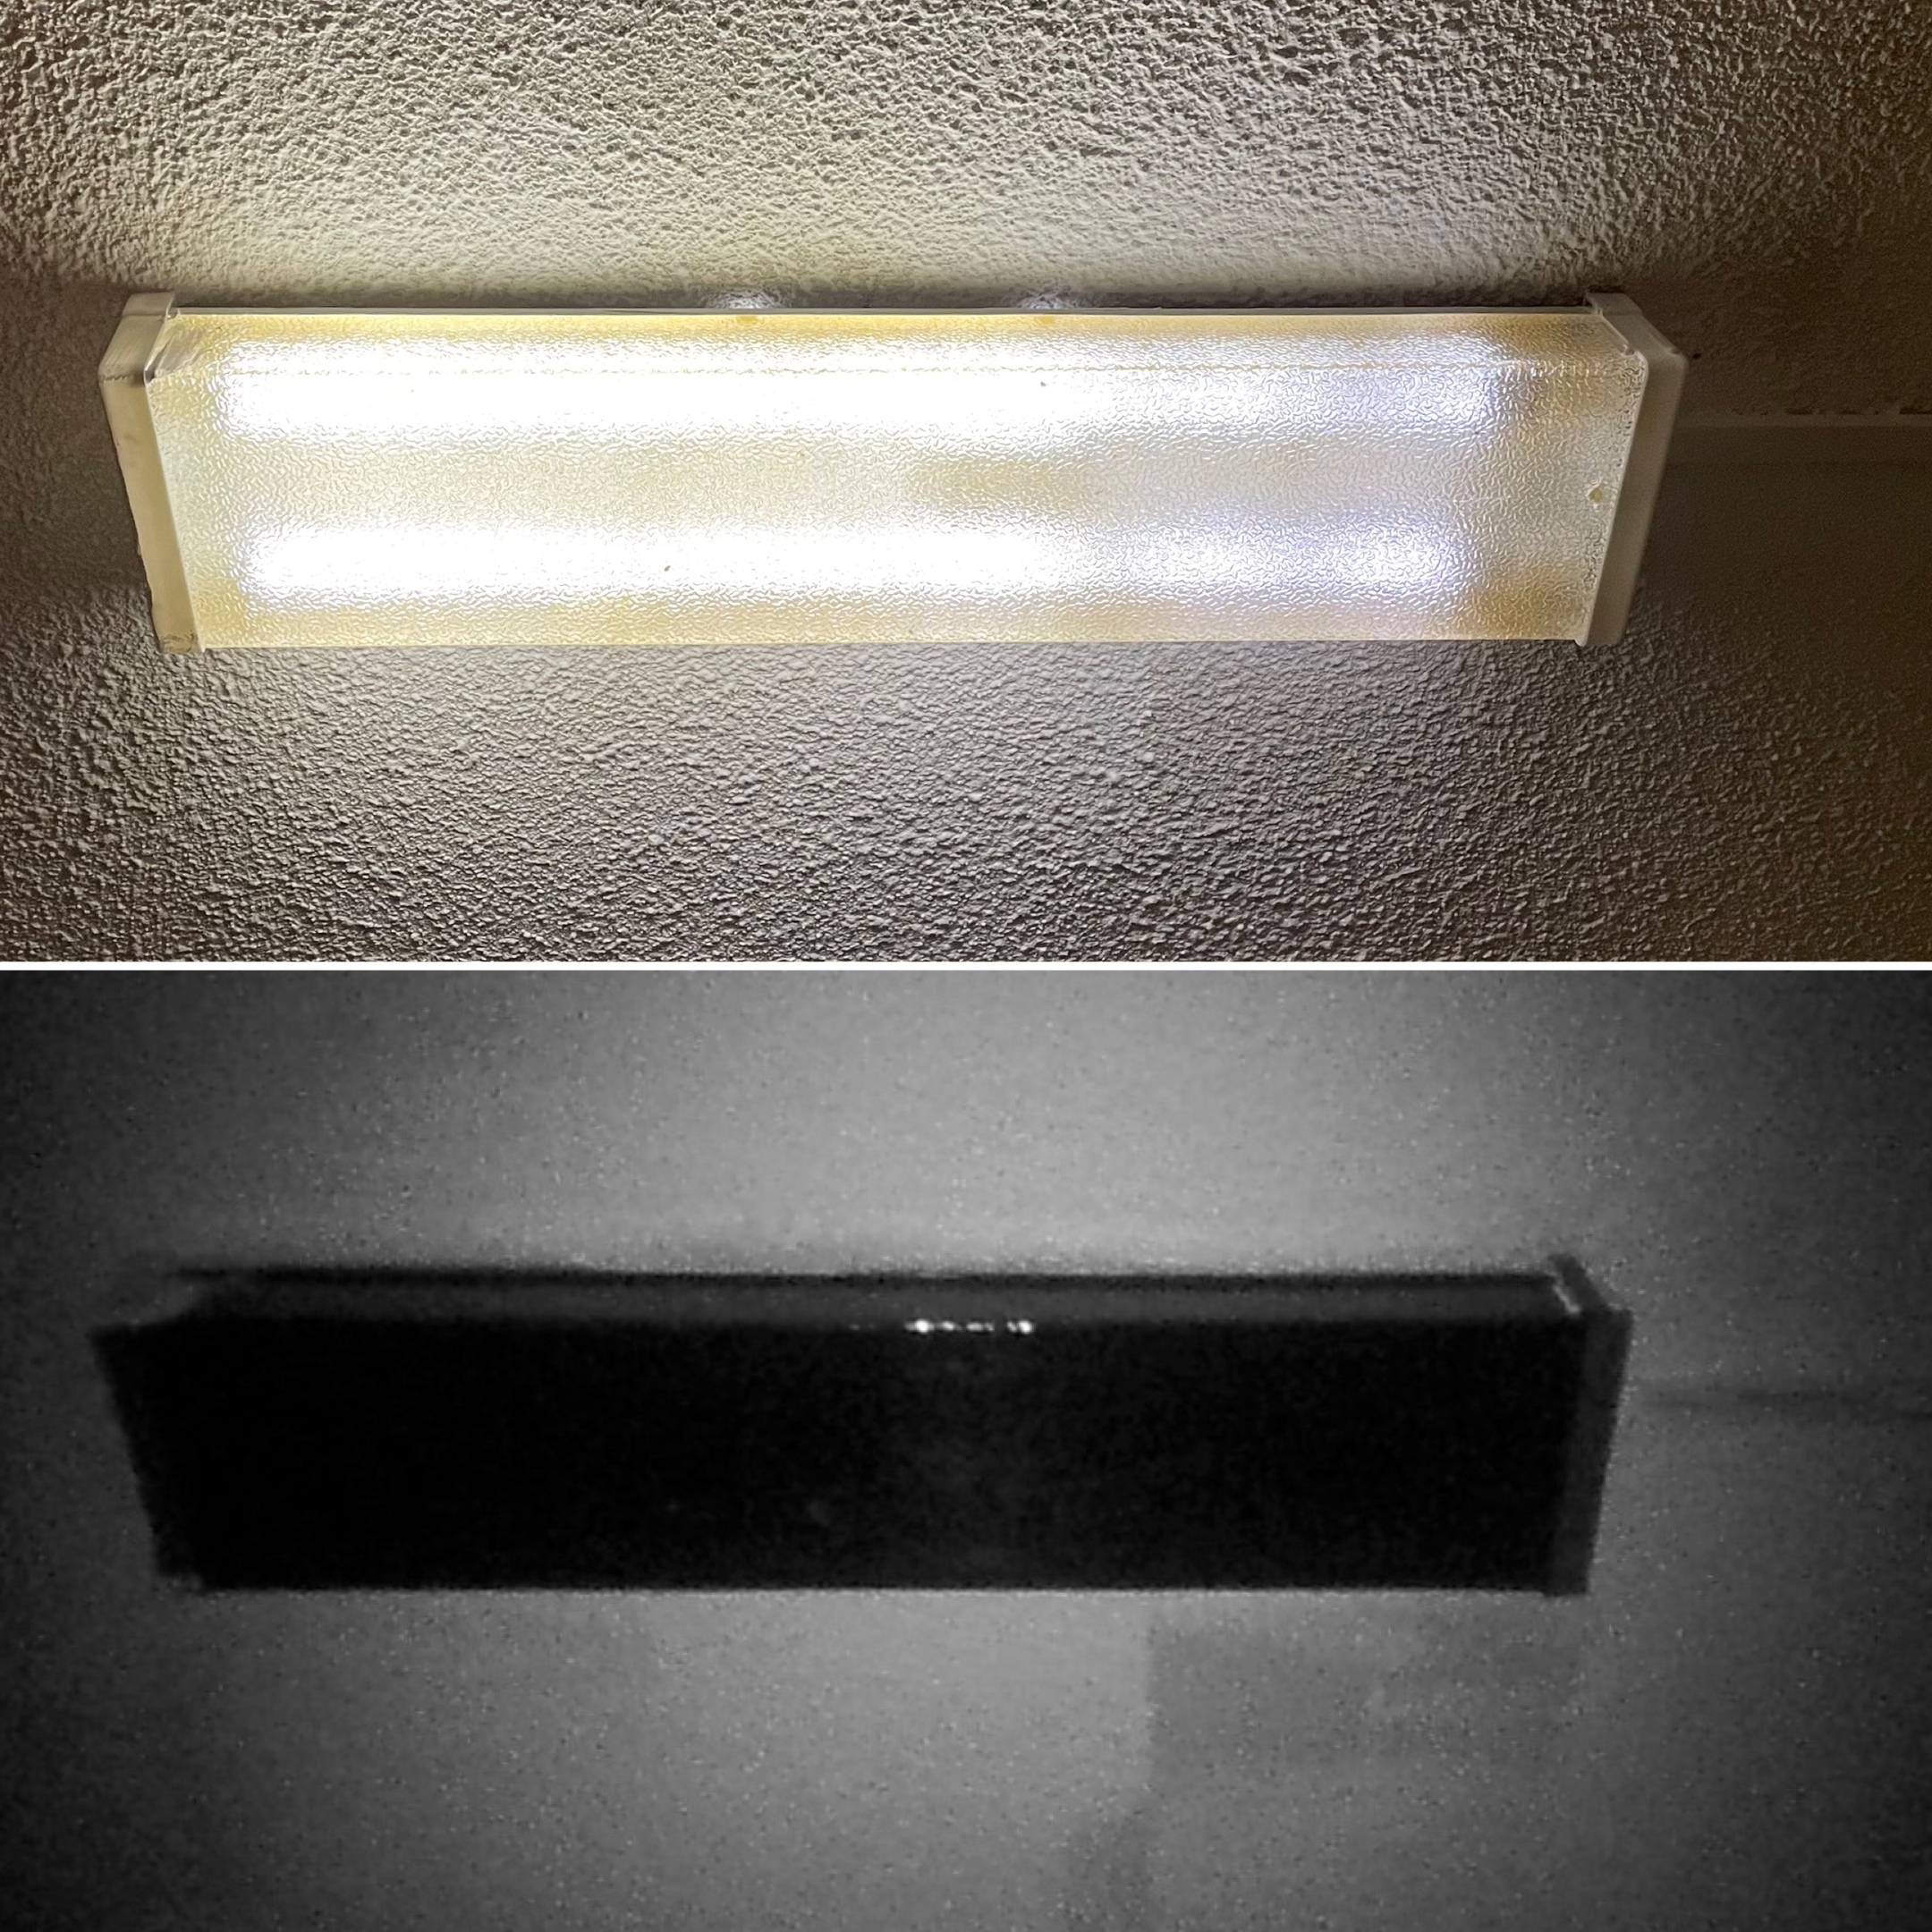 Сверху - фото лампы в видимом спектре, снизу - фото лампы в ультрафиолете с подсветкой внешним источником ультрафиолета